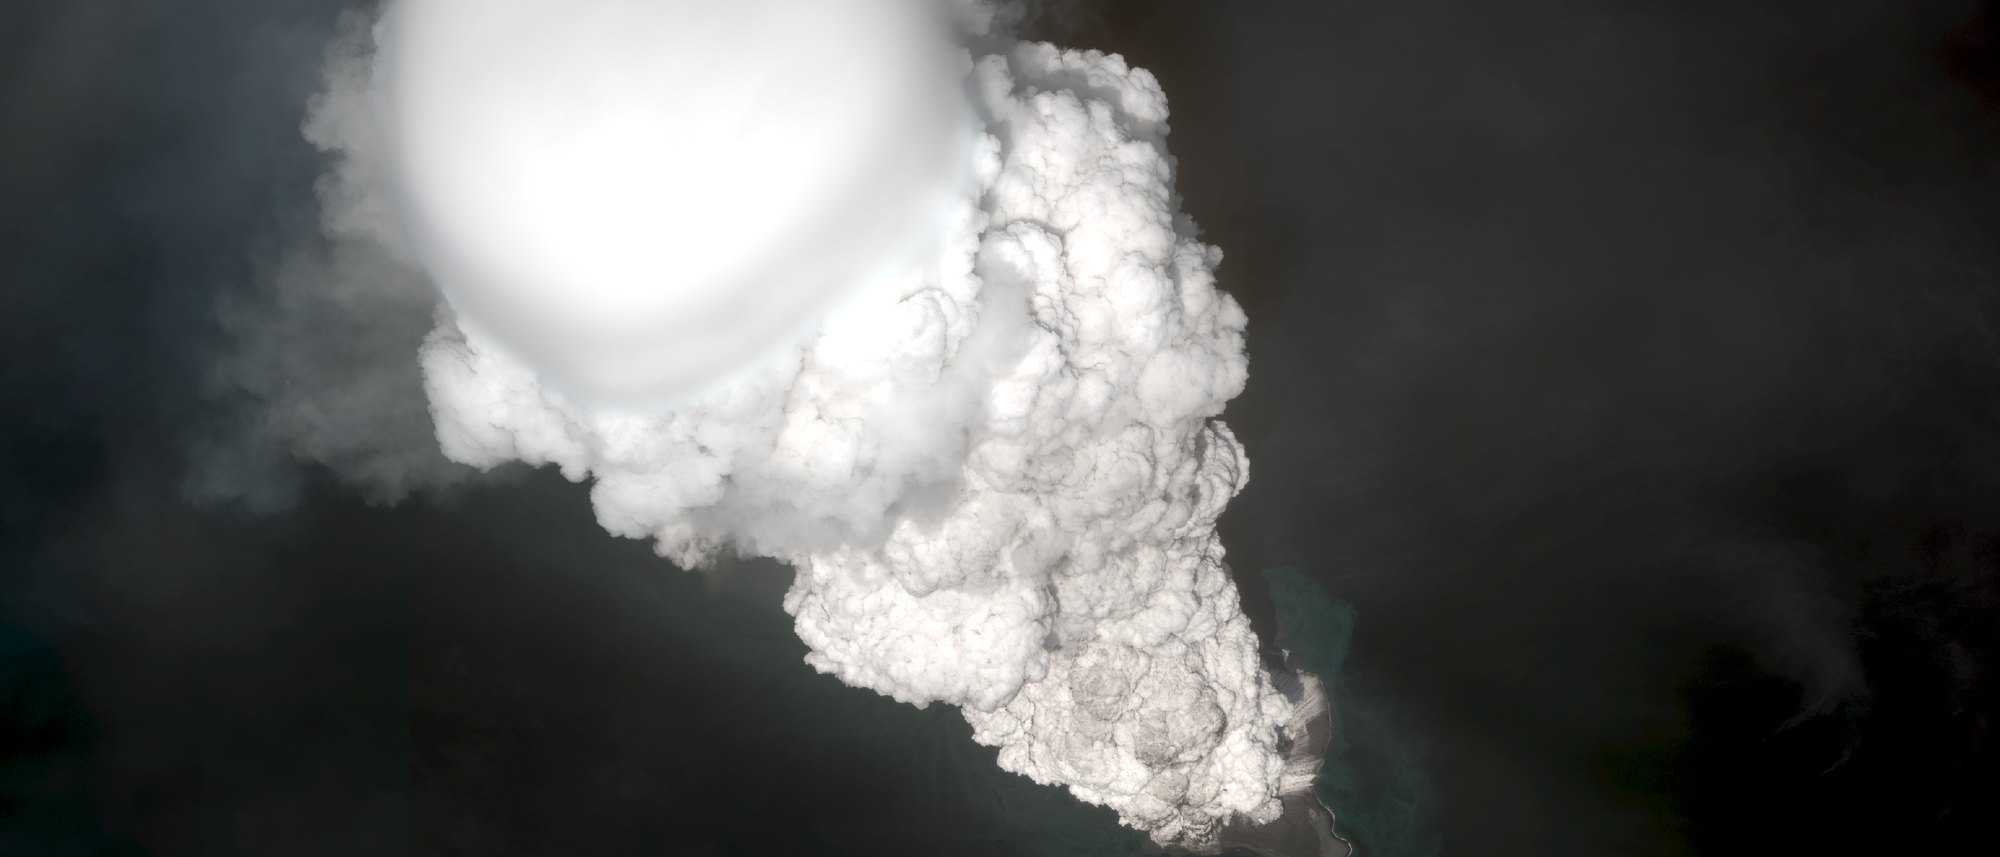 Gewaltiger Ausbruch des Vulkans Bogoslof in den Aleuten